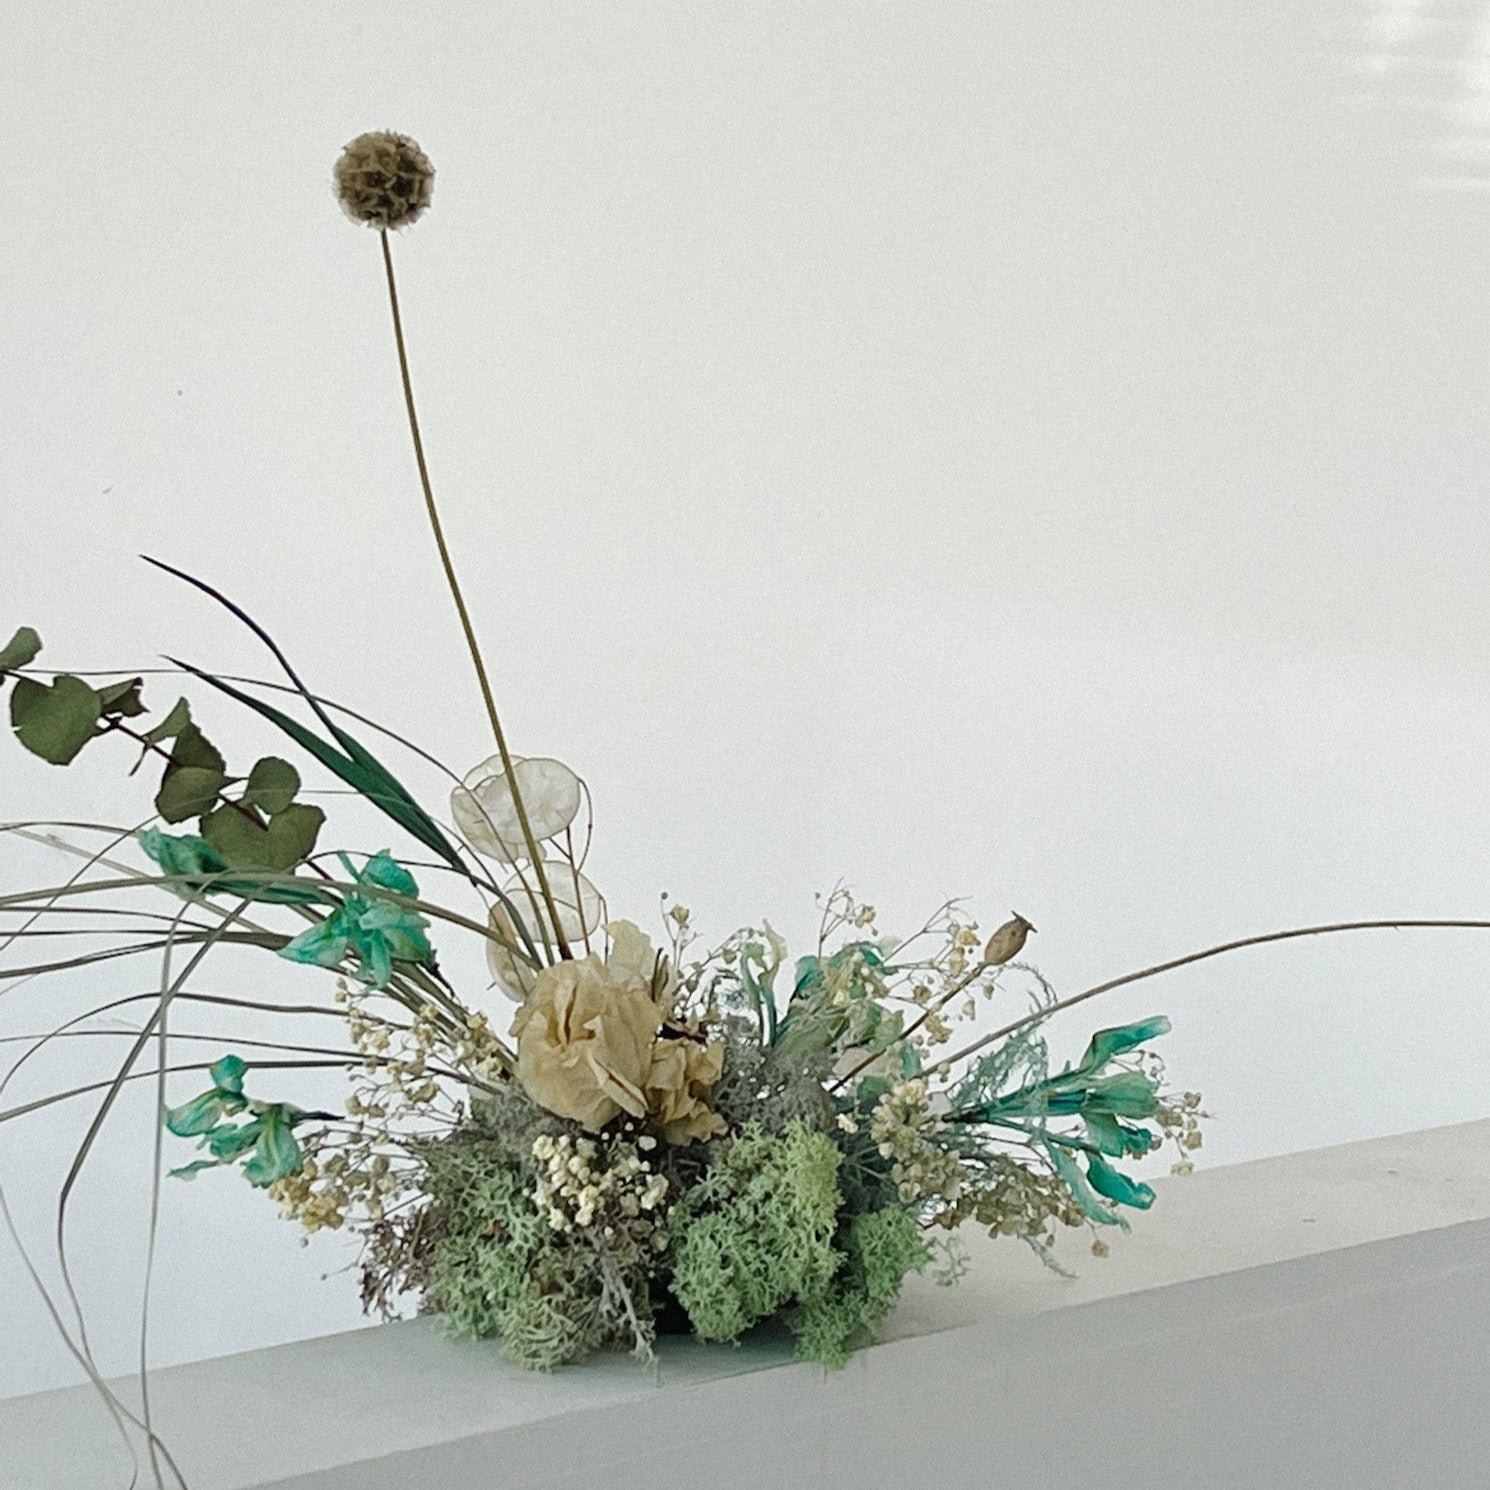 Workshop - Dried Flower Centrepiece